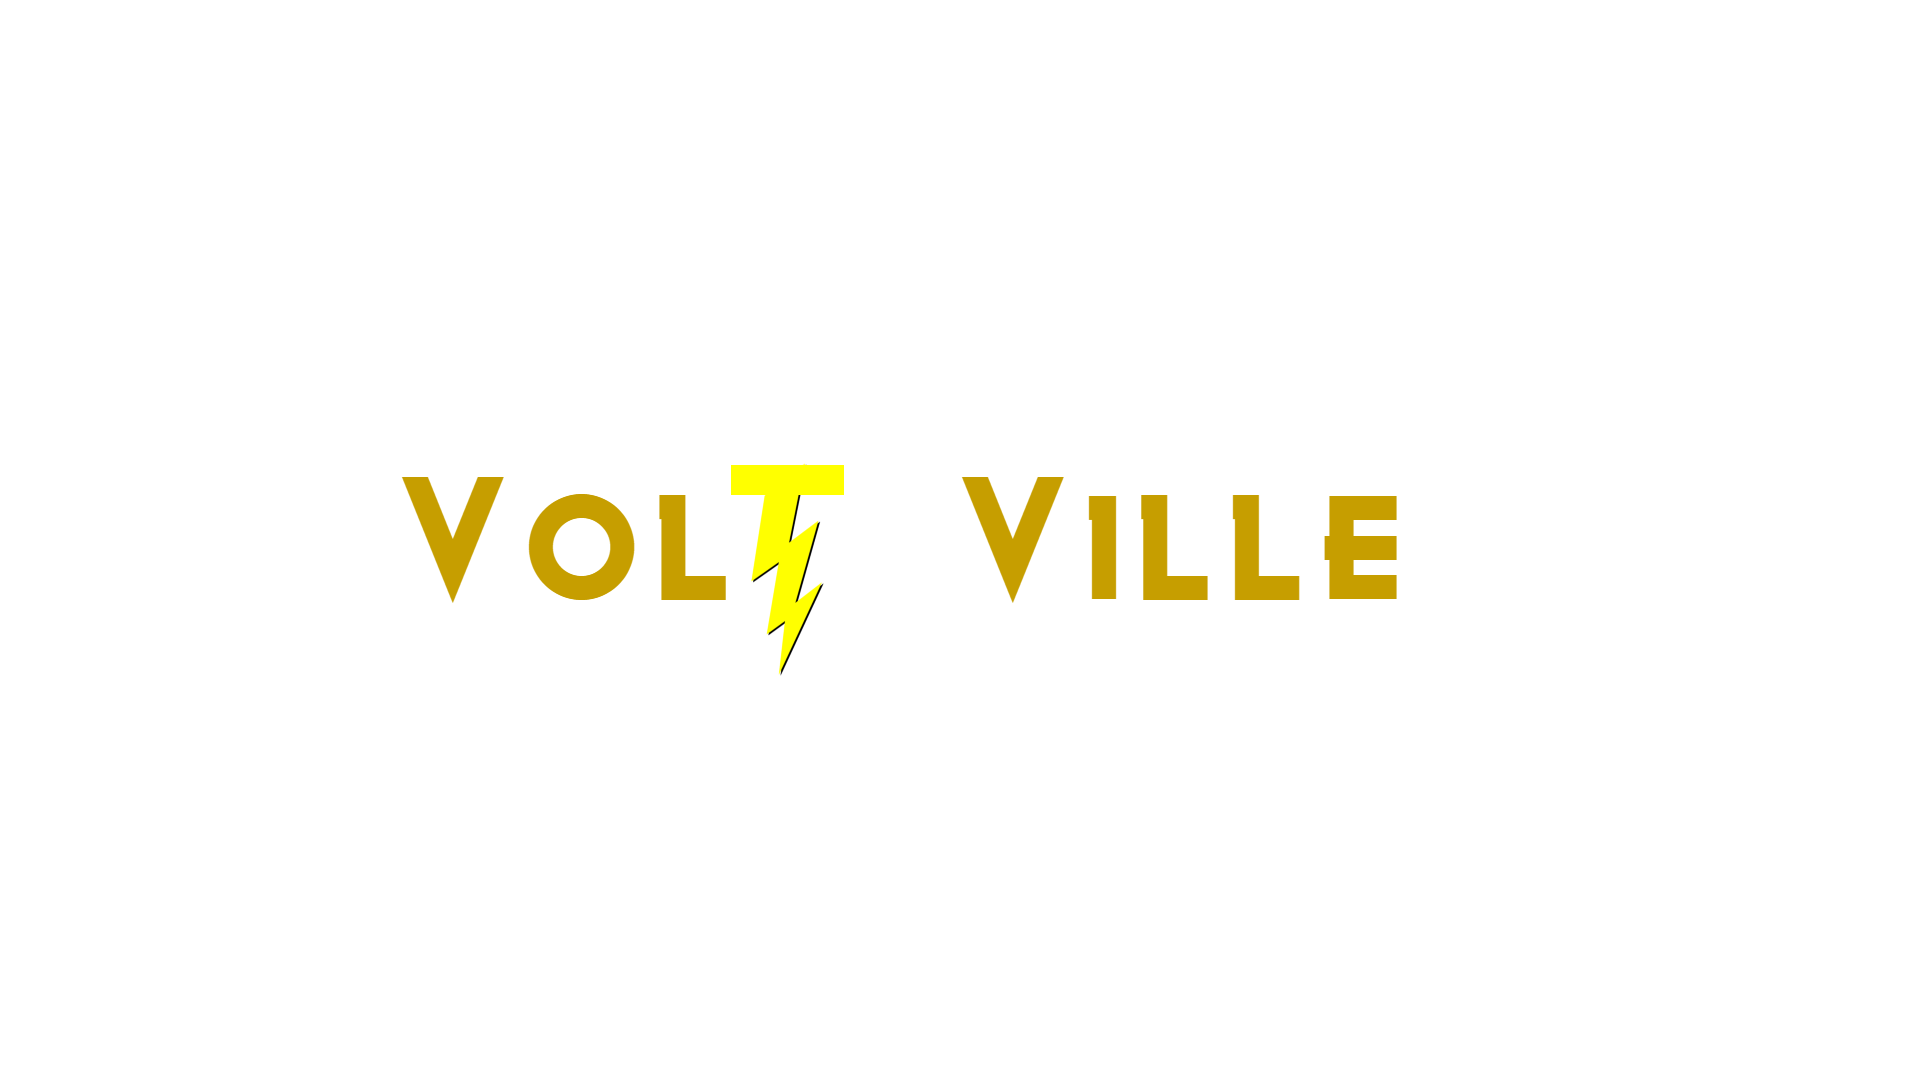 attack on Volt ville